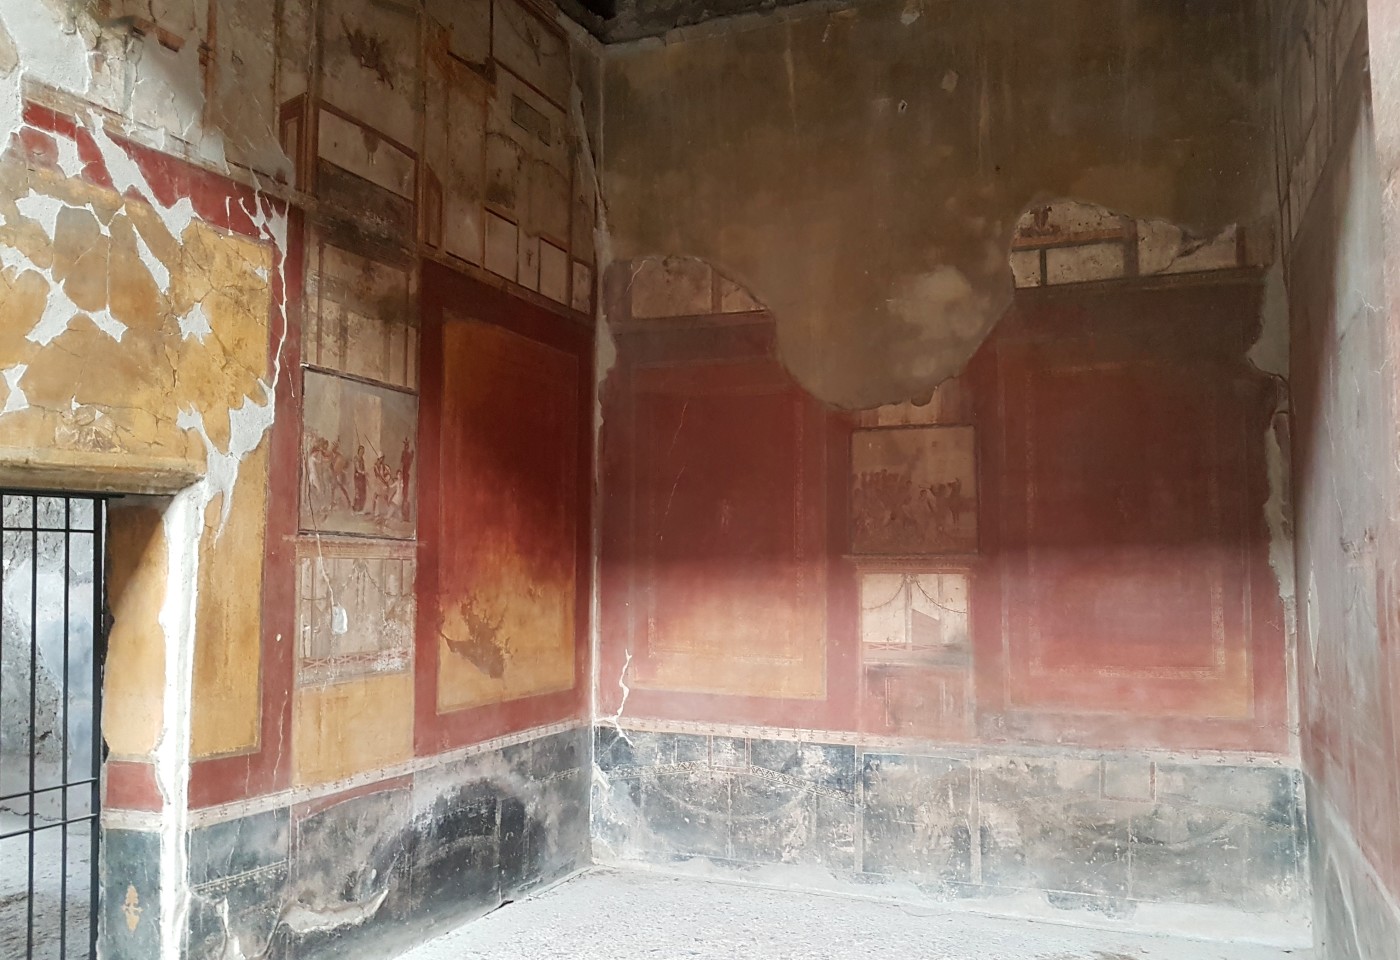 Afrescos - Pompeia - blog Vou pra Roma